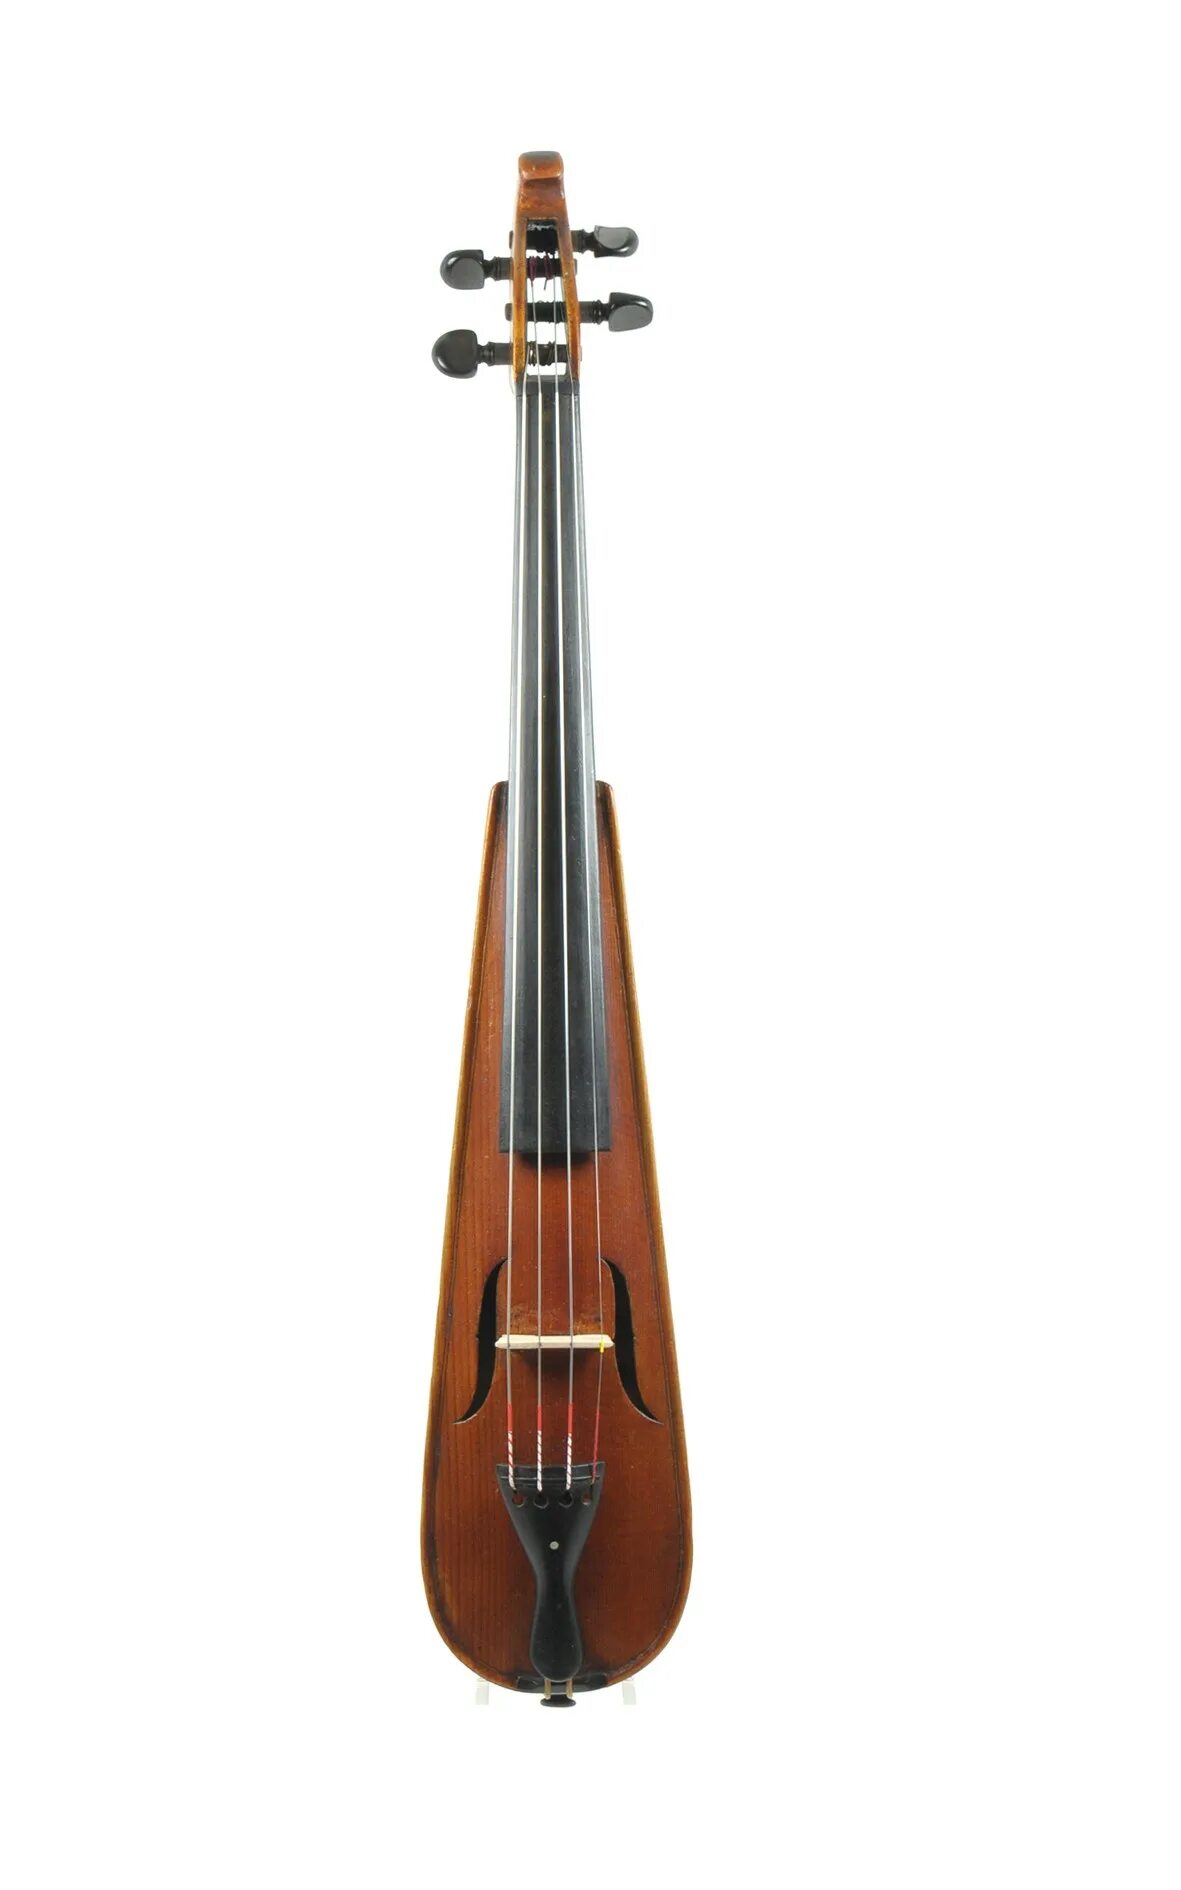 Пошетта музыкальный инструмент. Pochette Violin. Скрипка пошетта. Пошетта струнные смычковые музыкальные инструменты. Длинная скрипка